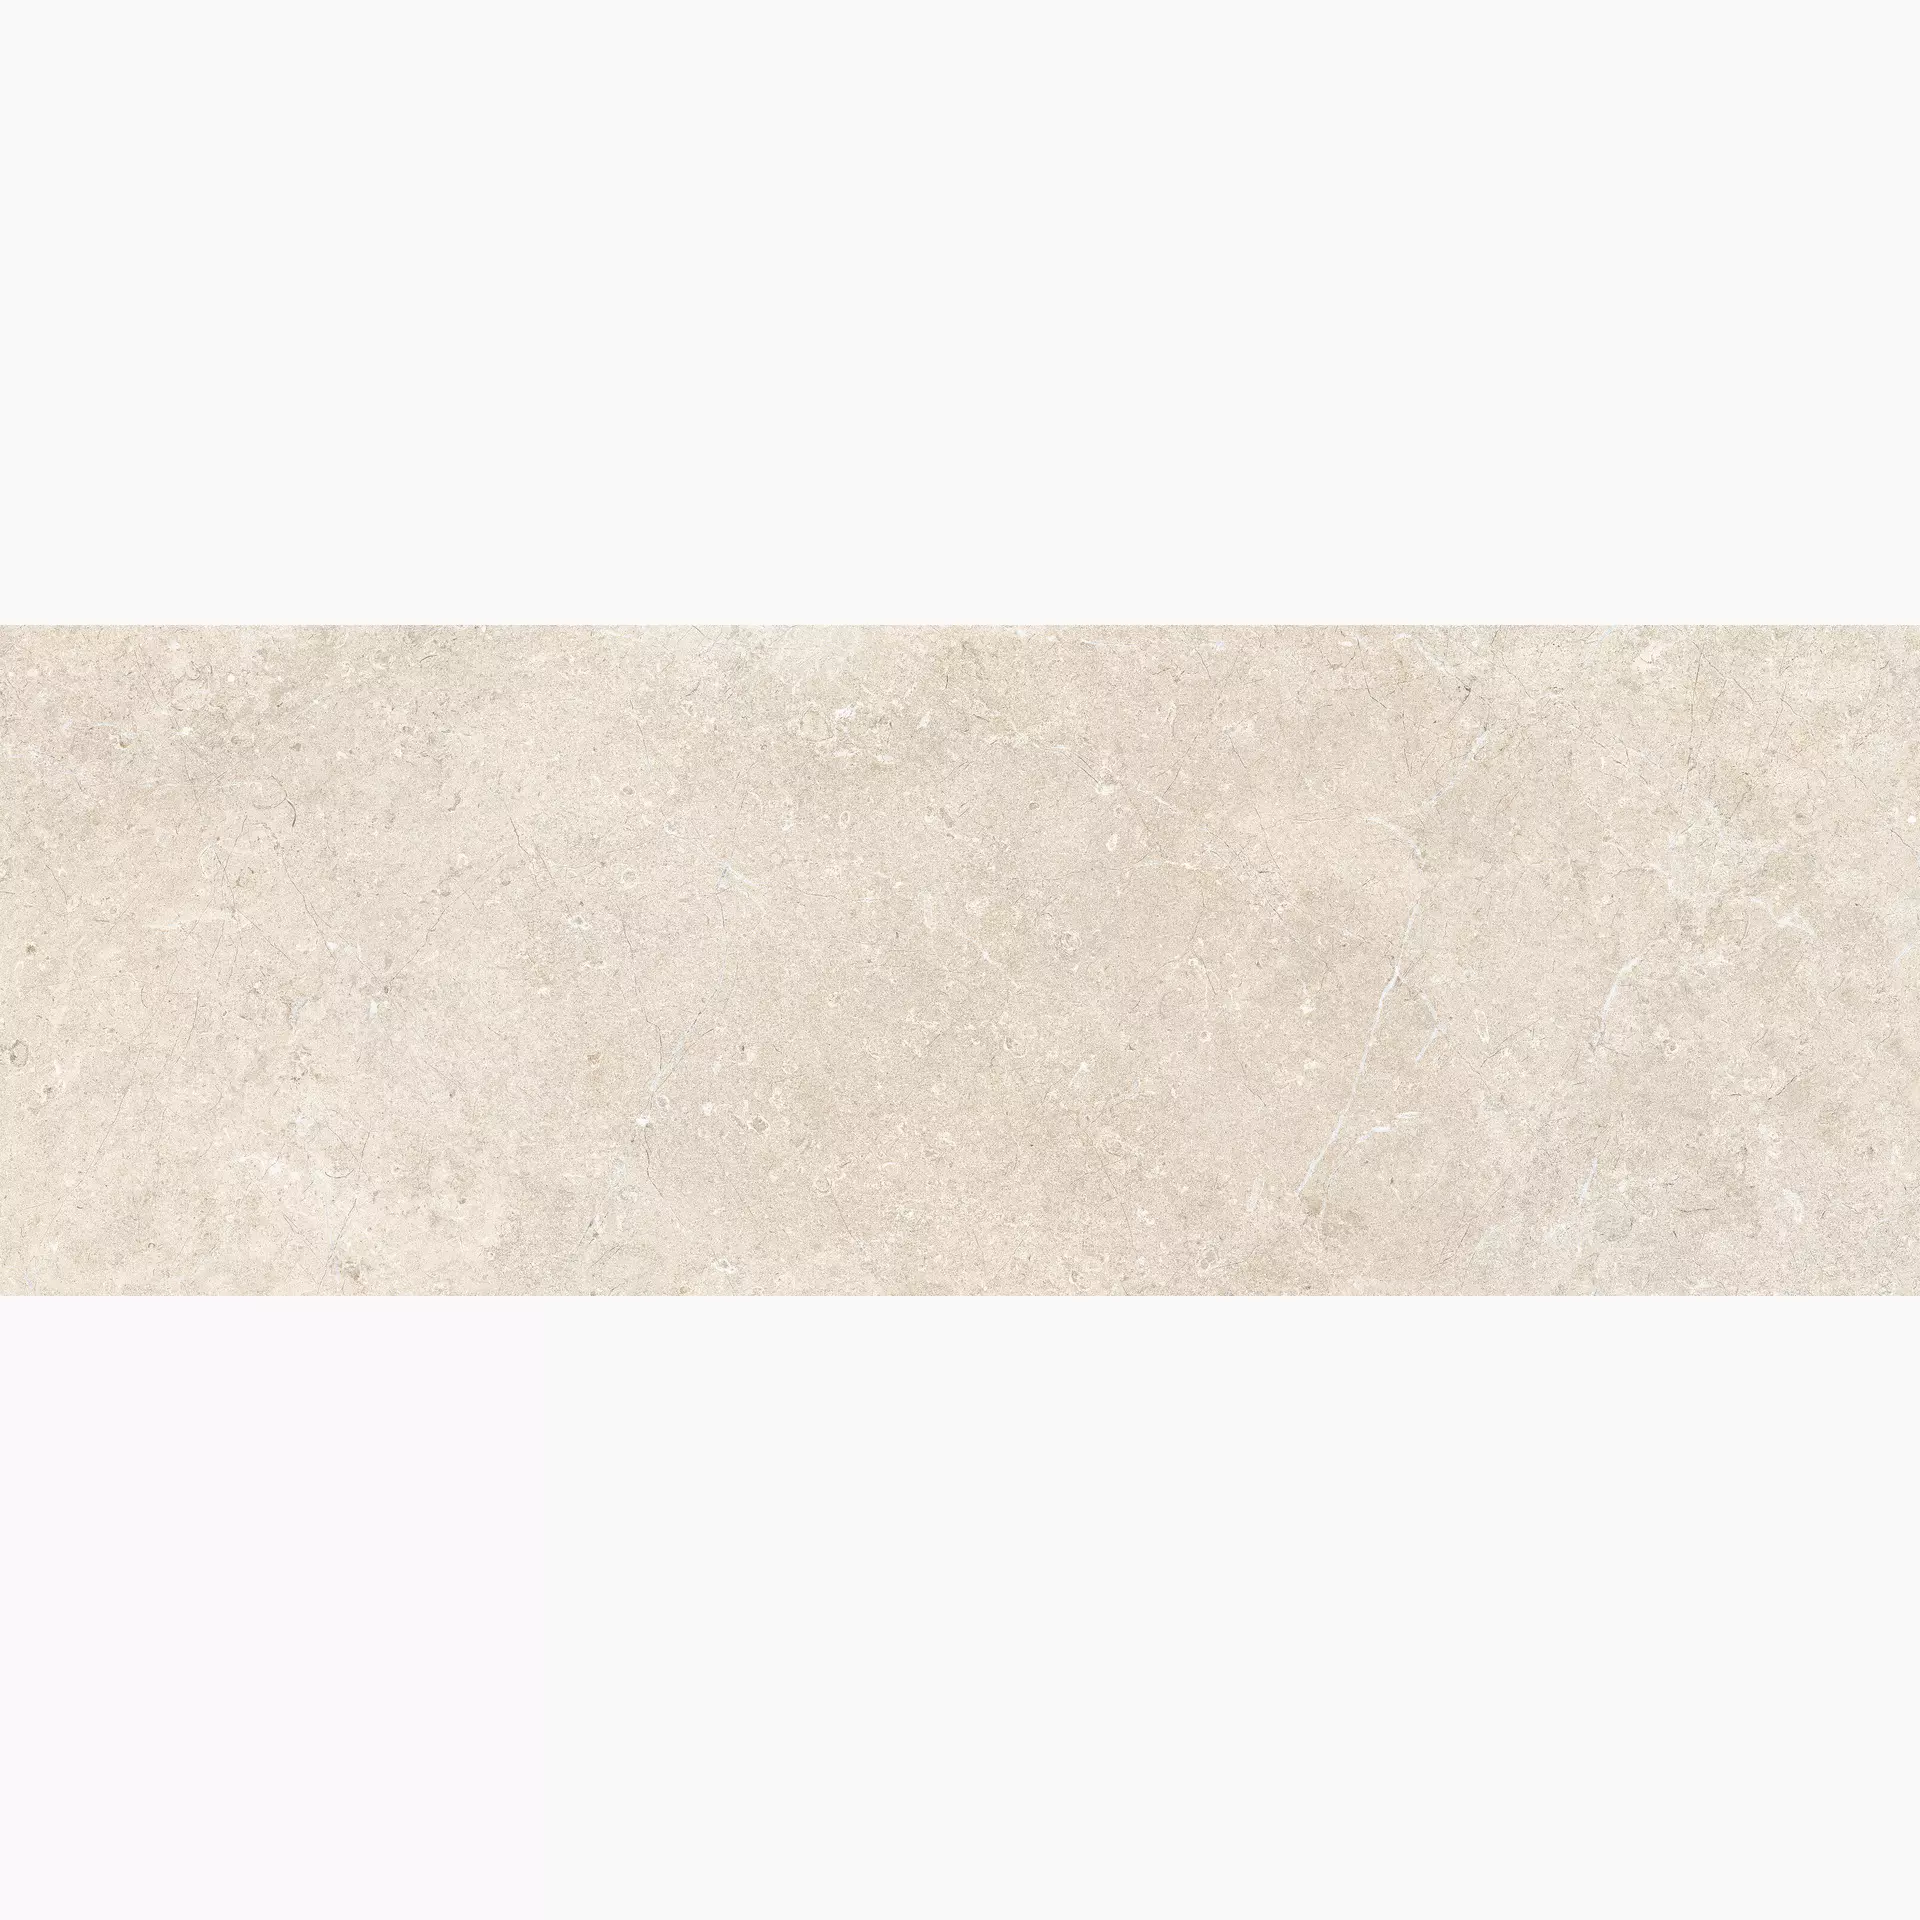 Wandfliese Marazzi Limestone Wall Sand Naturale – Matt Sand MFCE matt natur 40x120cm rektifiziert 6mm